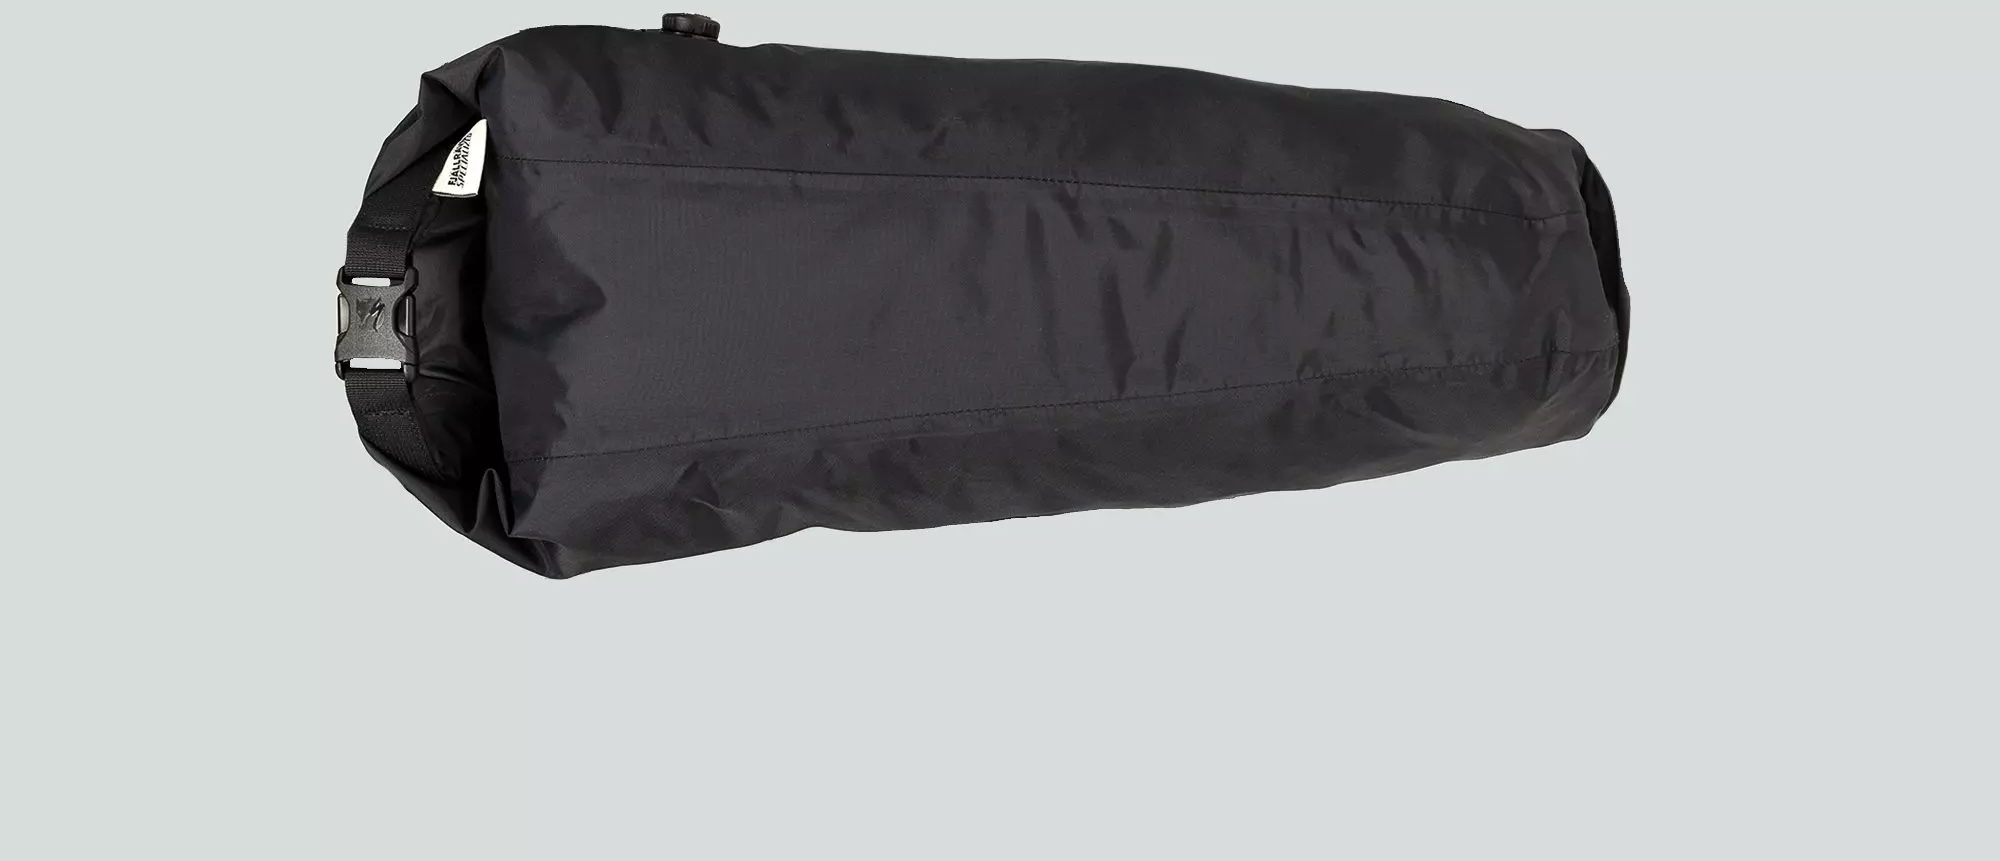 Specialized /Fjallraven Seatbag Drybag 16L Black